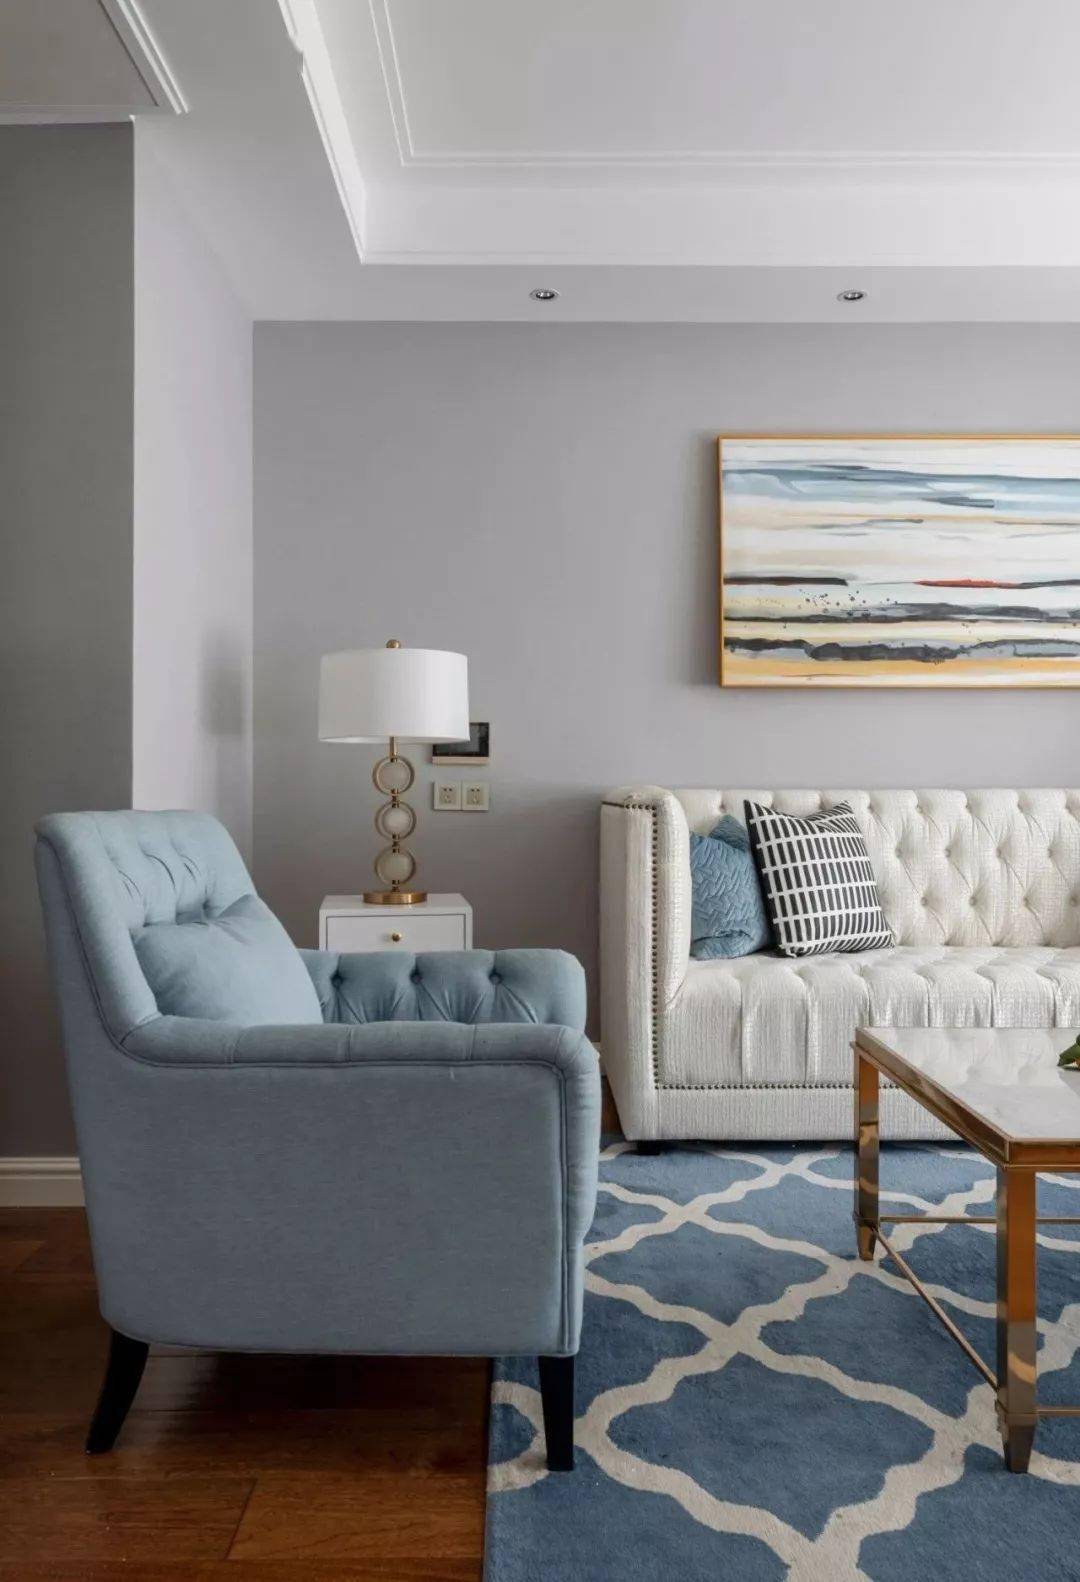 高级灰的墙布与淡蓝色的窗帘,沙发与地毯相互辉映,让客厅调性变得